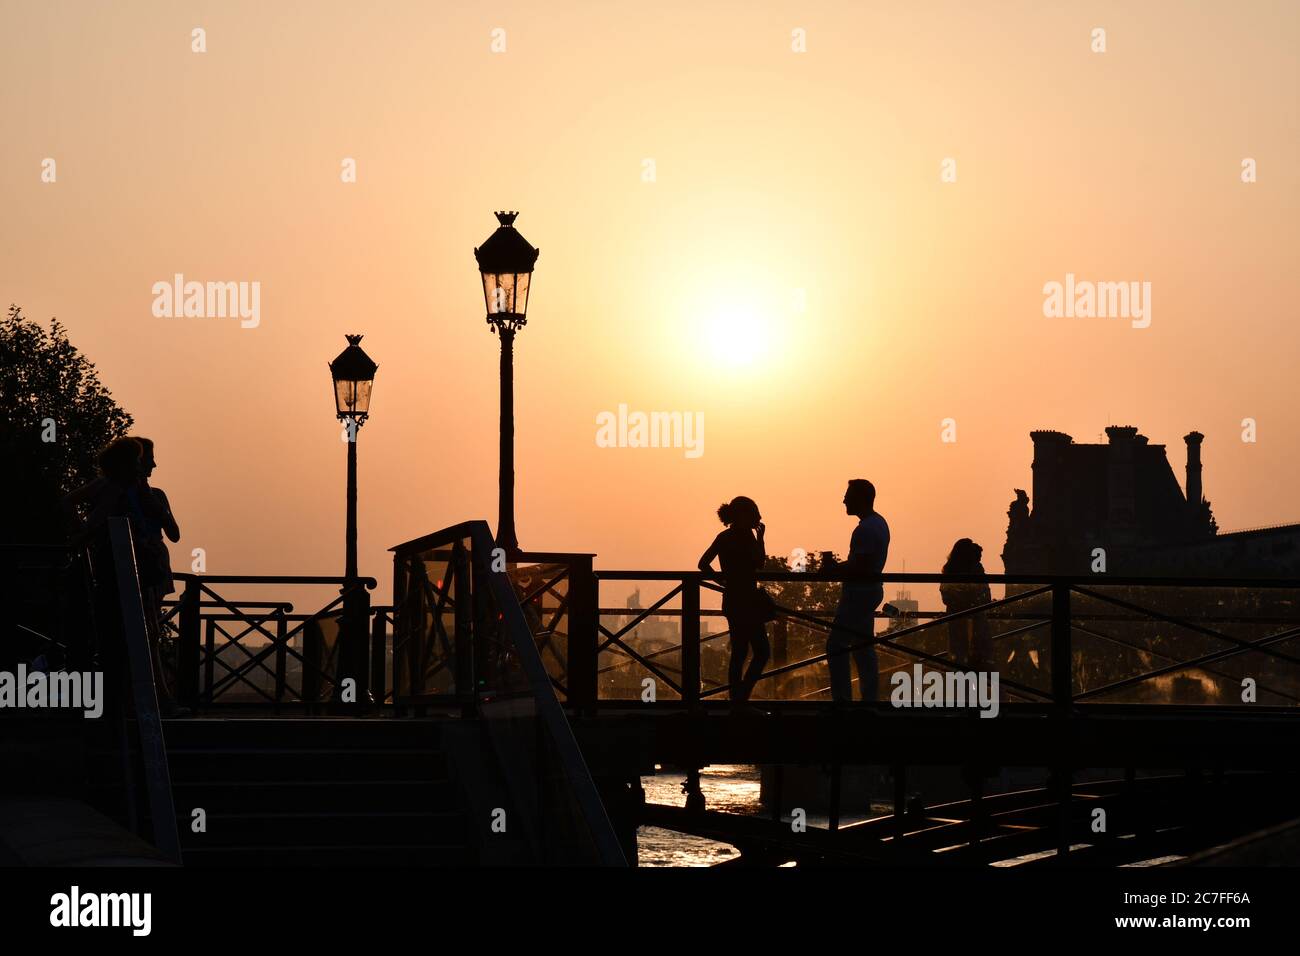 Silhouettes de personnes méconnaissables sur le pont au-dessus de la Seine devant la lumière du coucher du soleil. Lanterne vintage, lumières de rue sur fond de couleur orange Banque D'Images